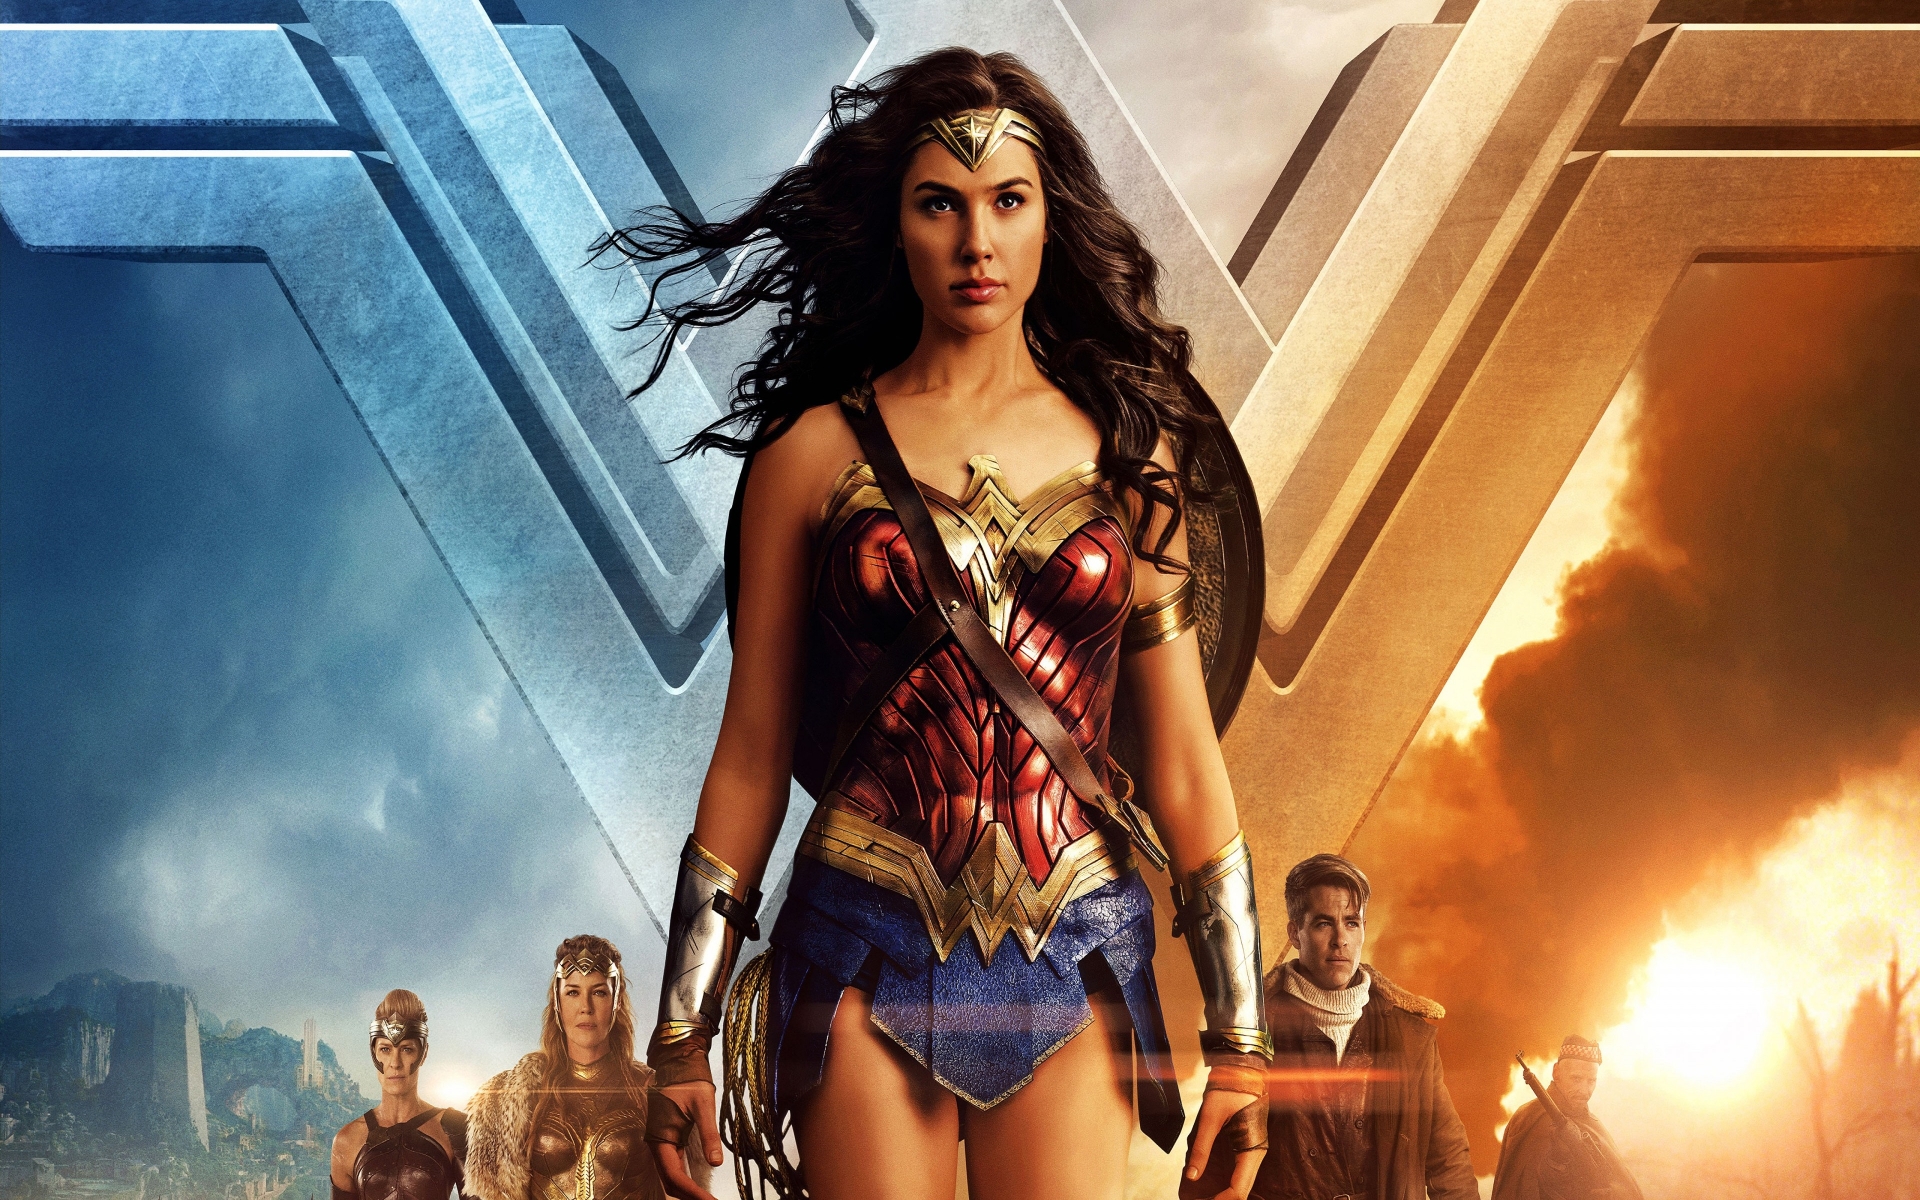 Wonder Woman Gal Gadot 2017 for 1920 x 1200 widescreen resolution